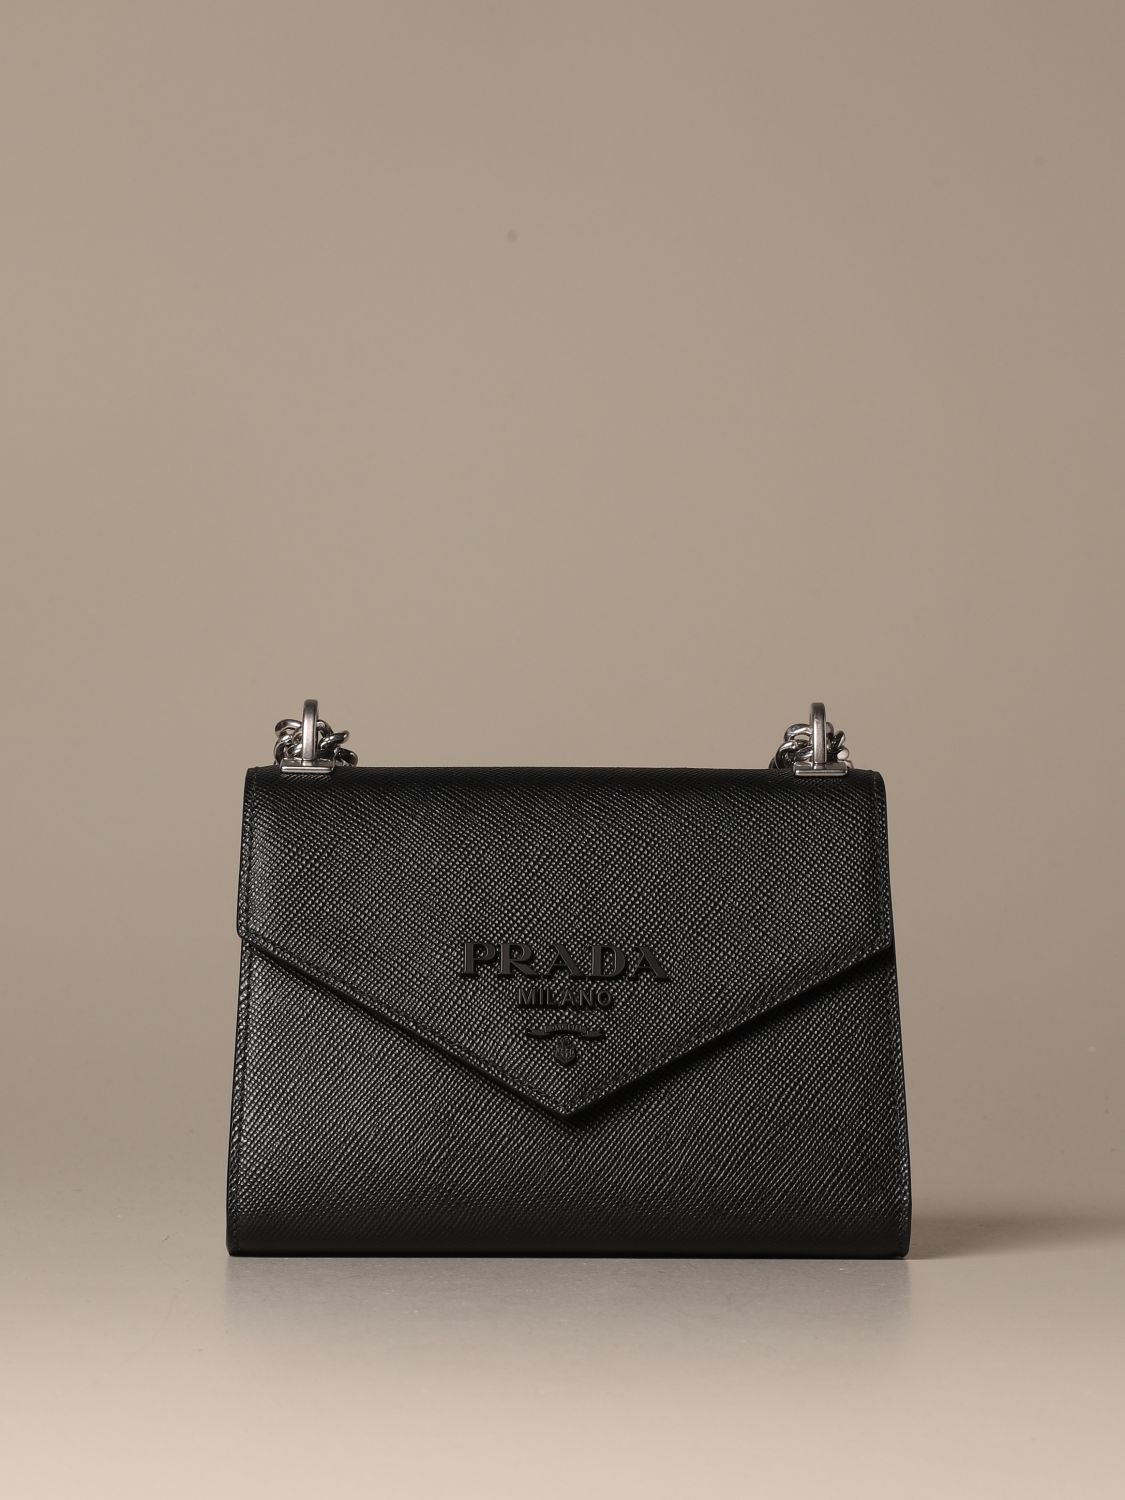 Monochrome Prada bag in saffiano leather